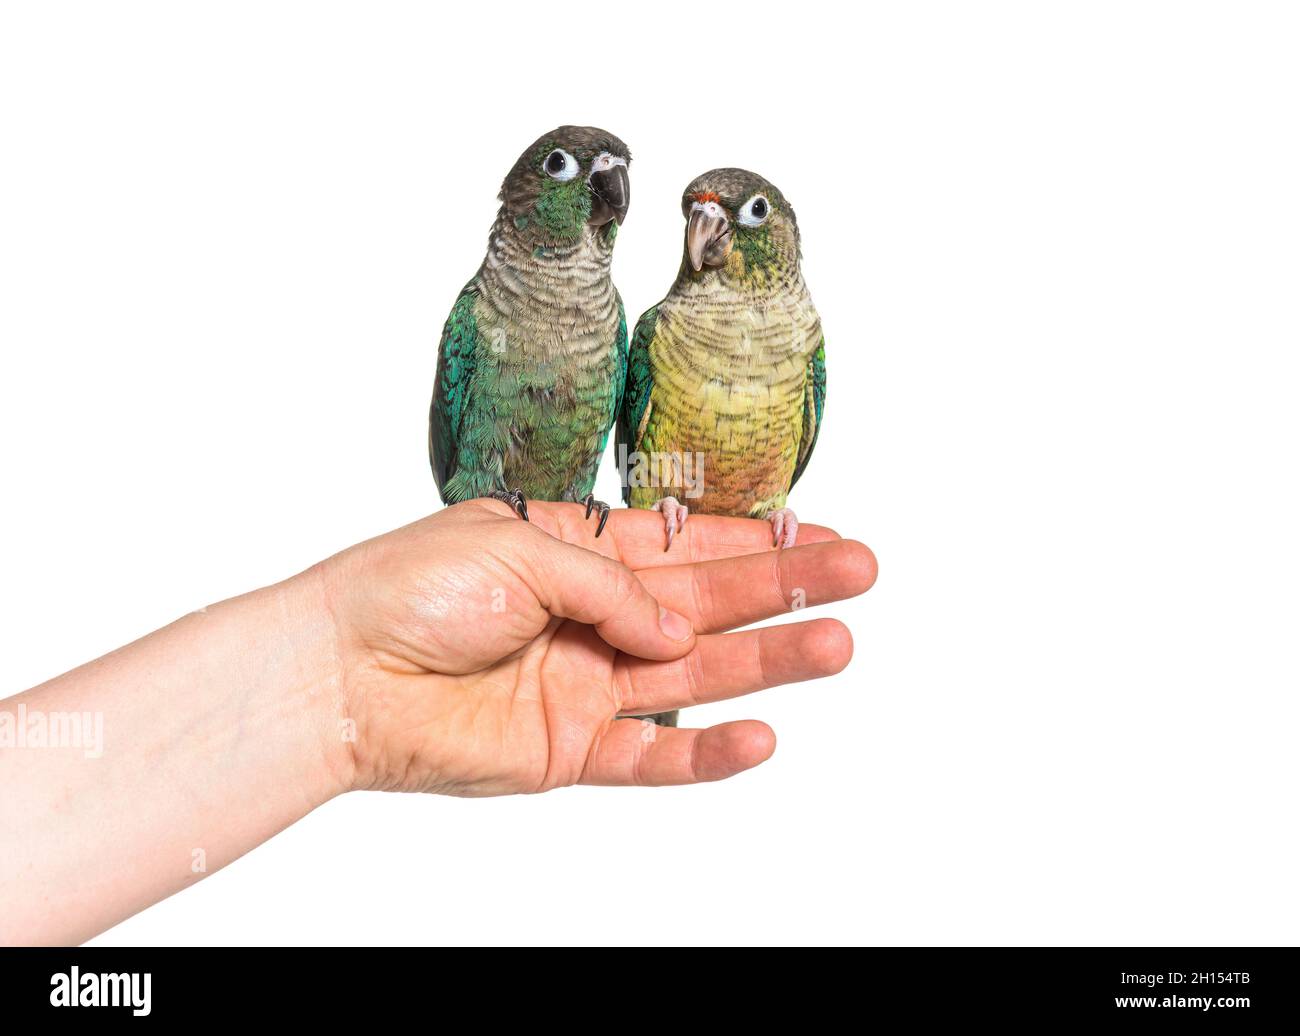 Deux oiseaux de conure verts tiennent sur une main humaine, isolés Banque D'Images